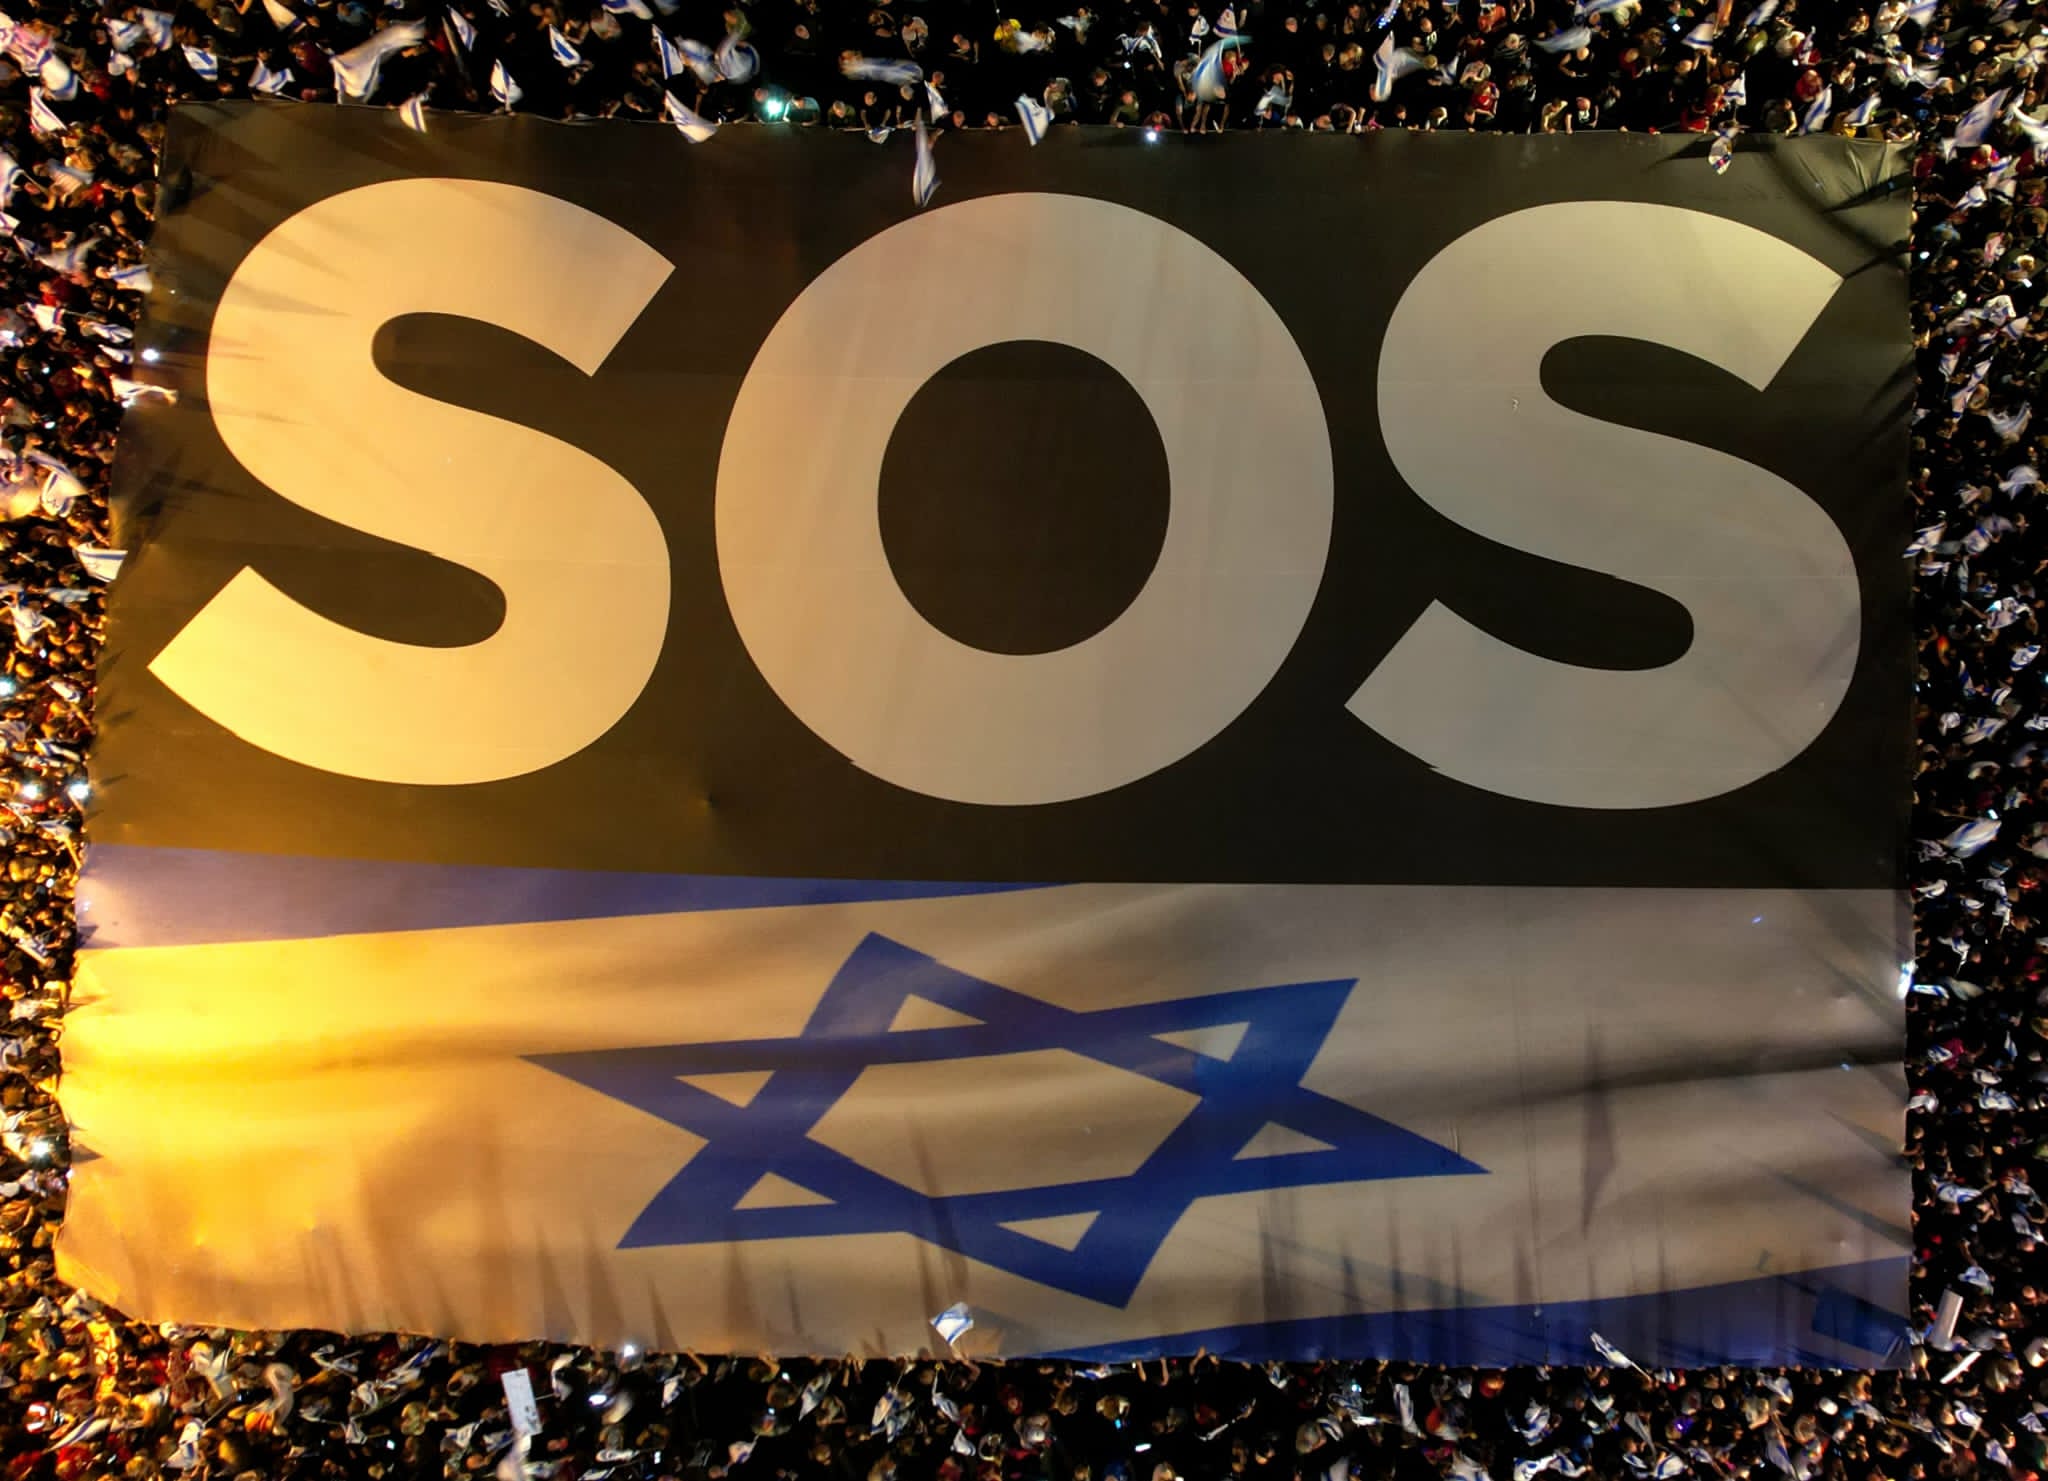 שלט 'SOS' בהפגנת מחאה נגד הרפורמה המשפטית בשדרות קפלן בתל אביב (צילום: אמיר גולדשטיין)